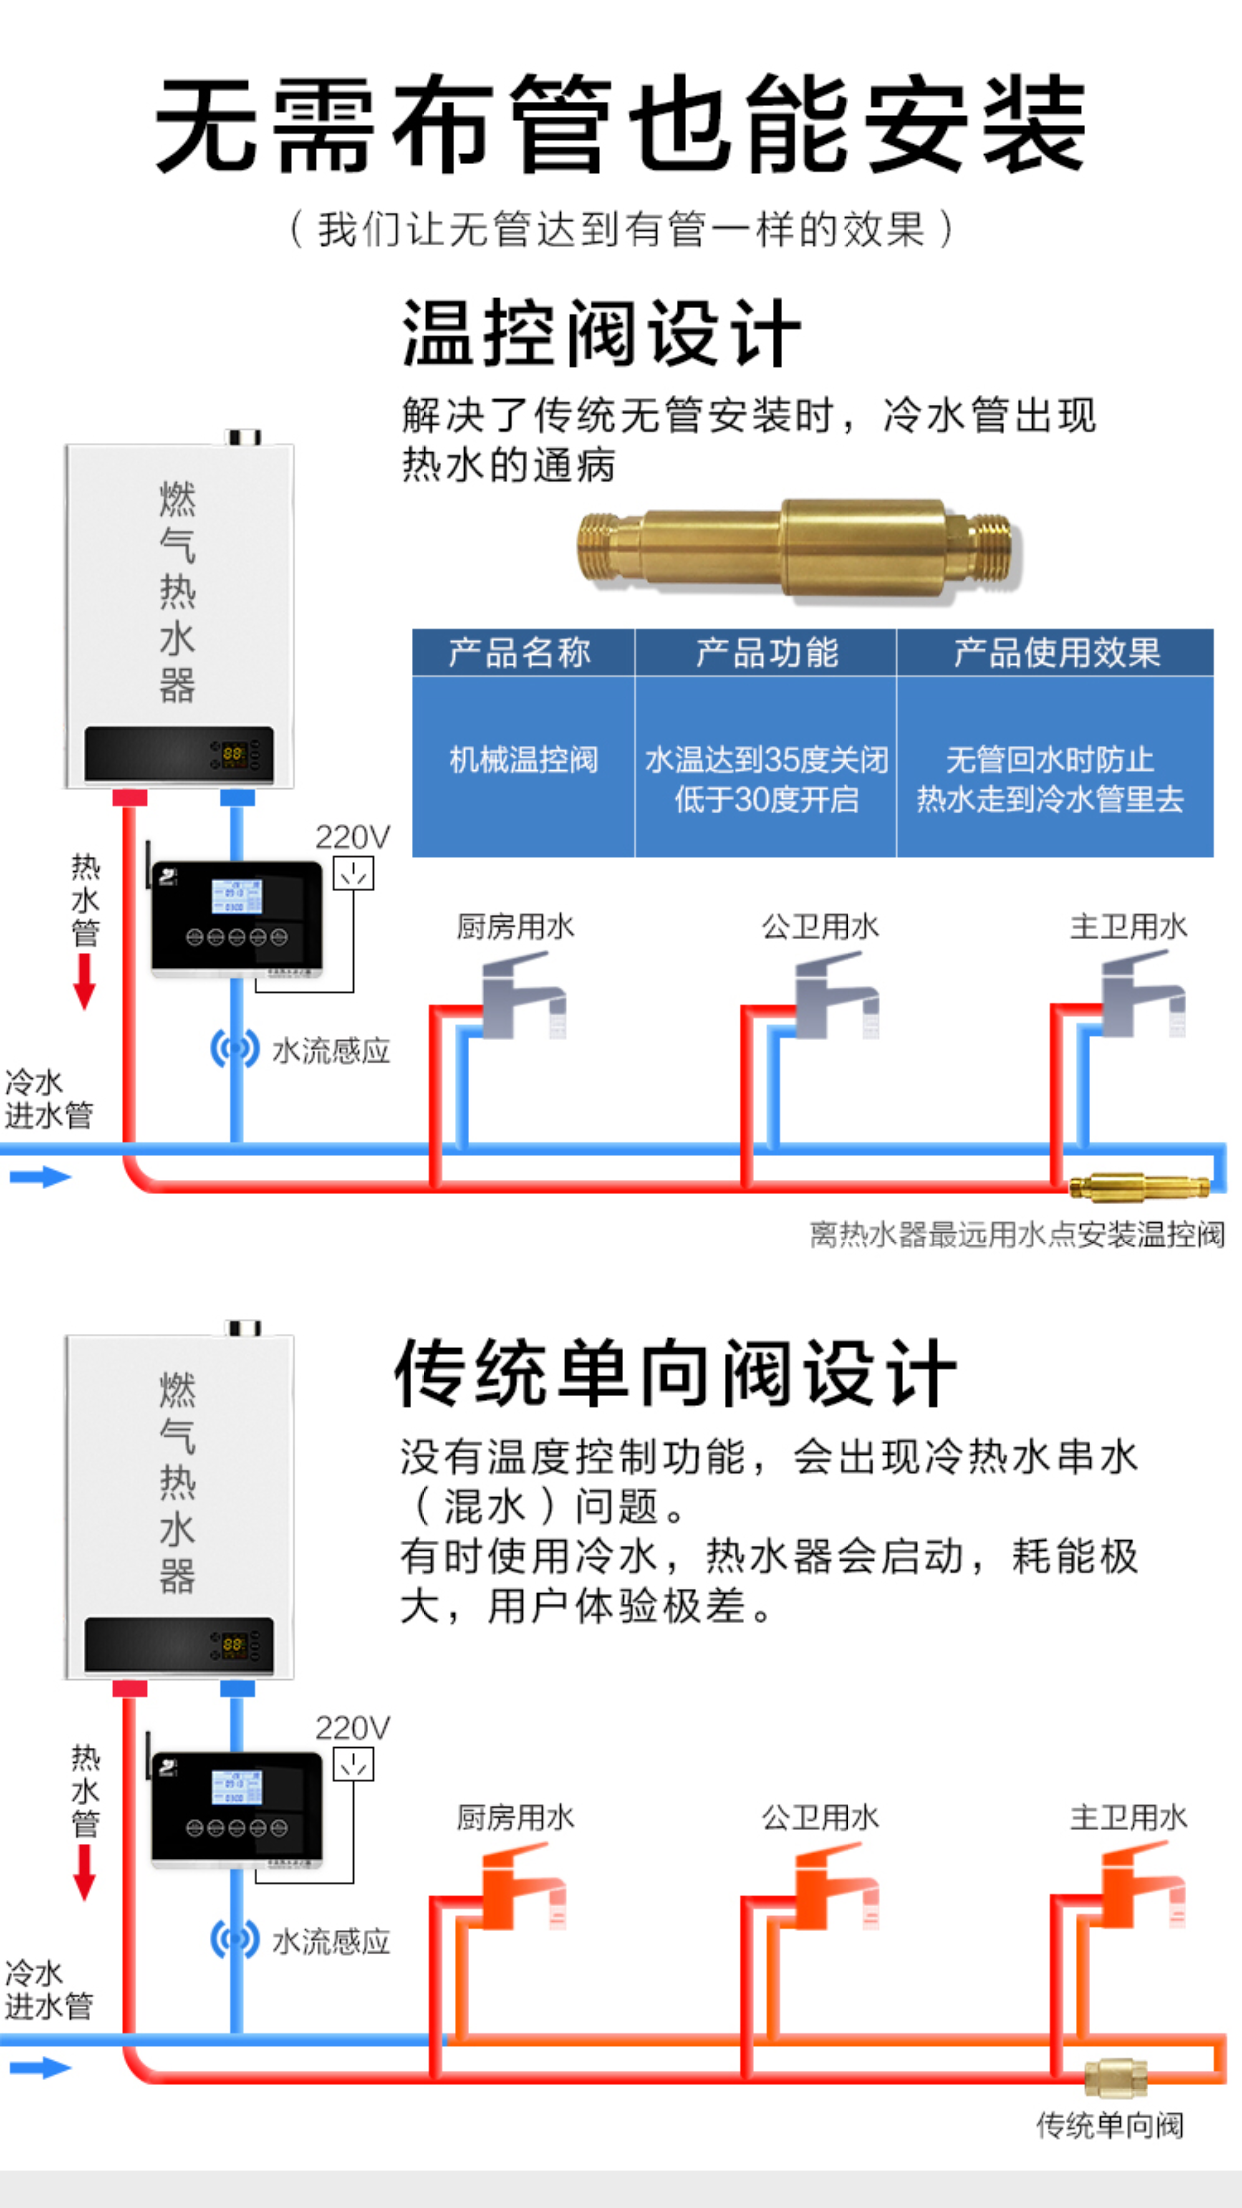 热水循环循环系统哪家好-广东中投电器有限公司